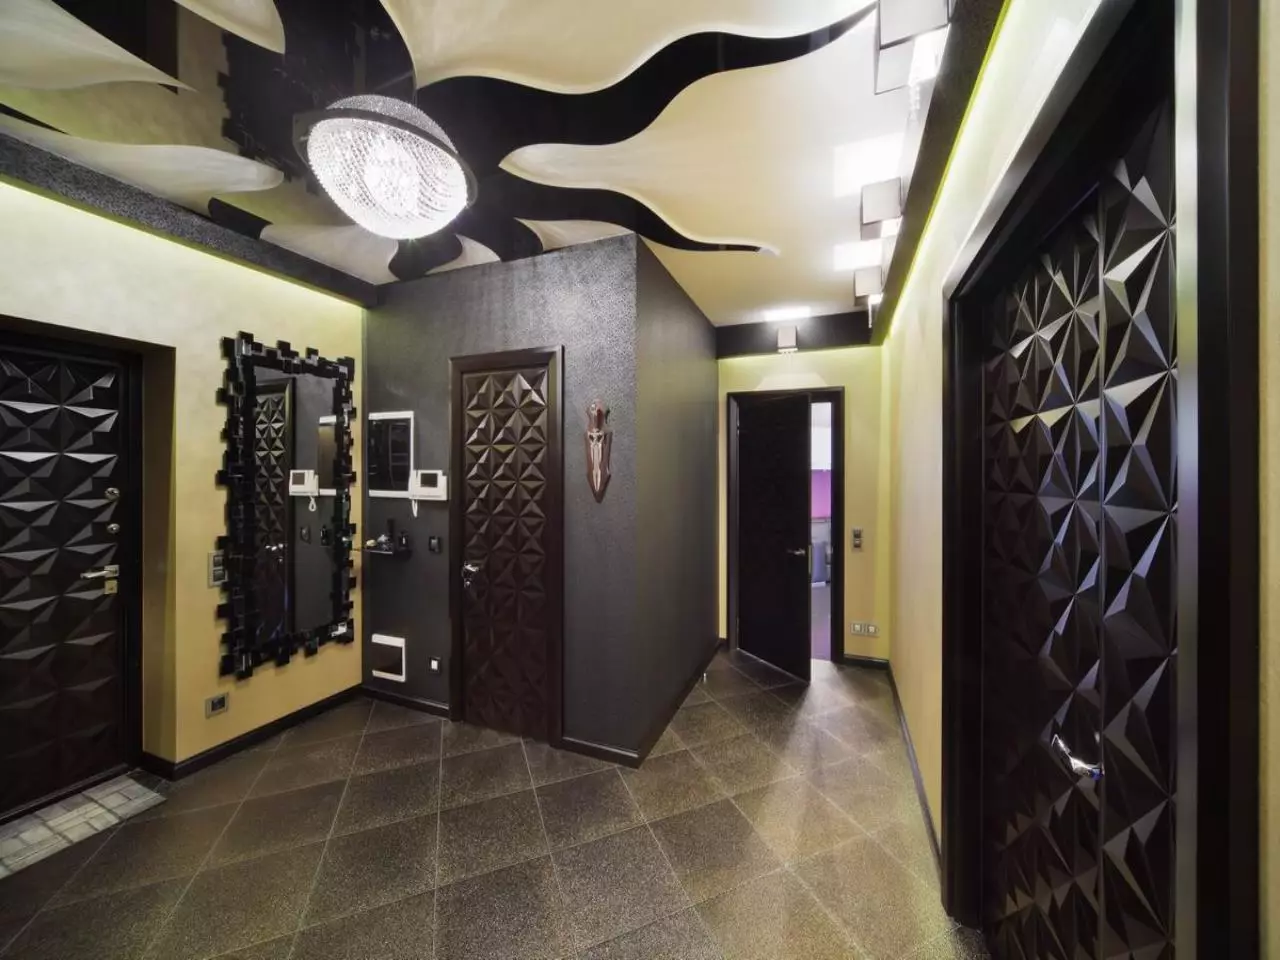 Soffitto elasticizzato nel corridoio (71 foto): design del soffitto in un corridoio stretto e lungo, opzioni con luci a punti e disegni a due livelli nell'appartamento, nelle specie nere e lucide 9270_52